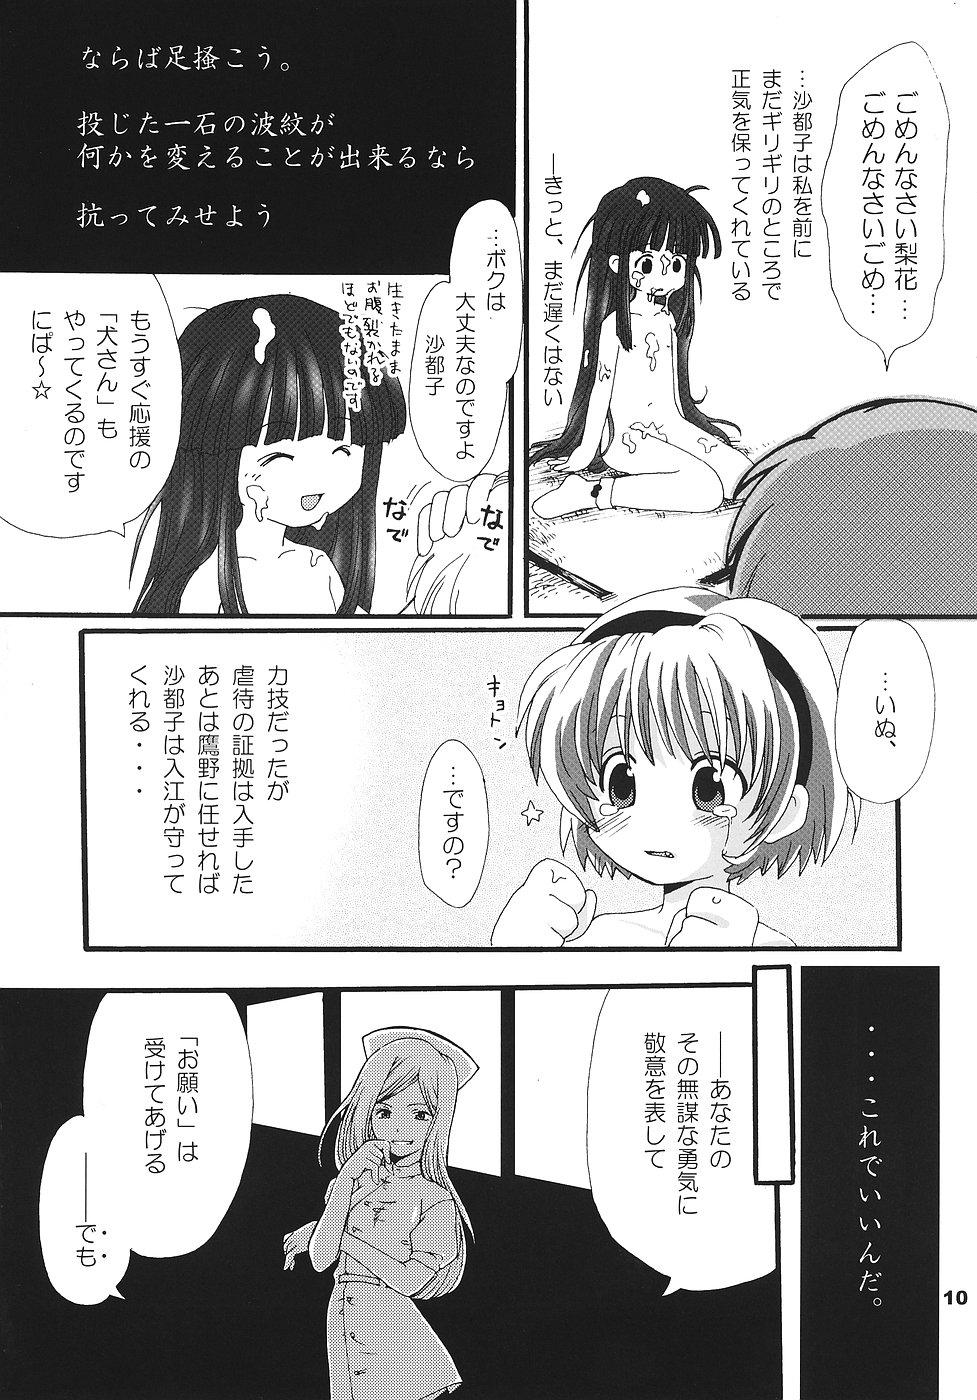 Bunduda Higurashi no Koe, Ima wa Tae - Higurashi no naku koro ni Costume - Page 9